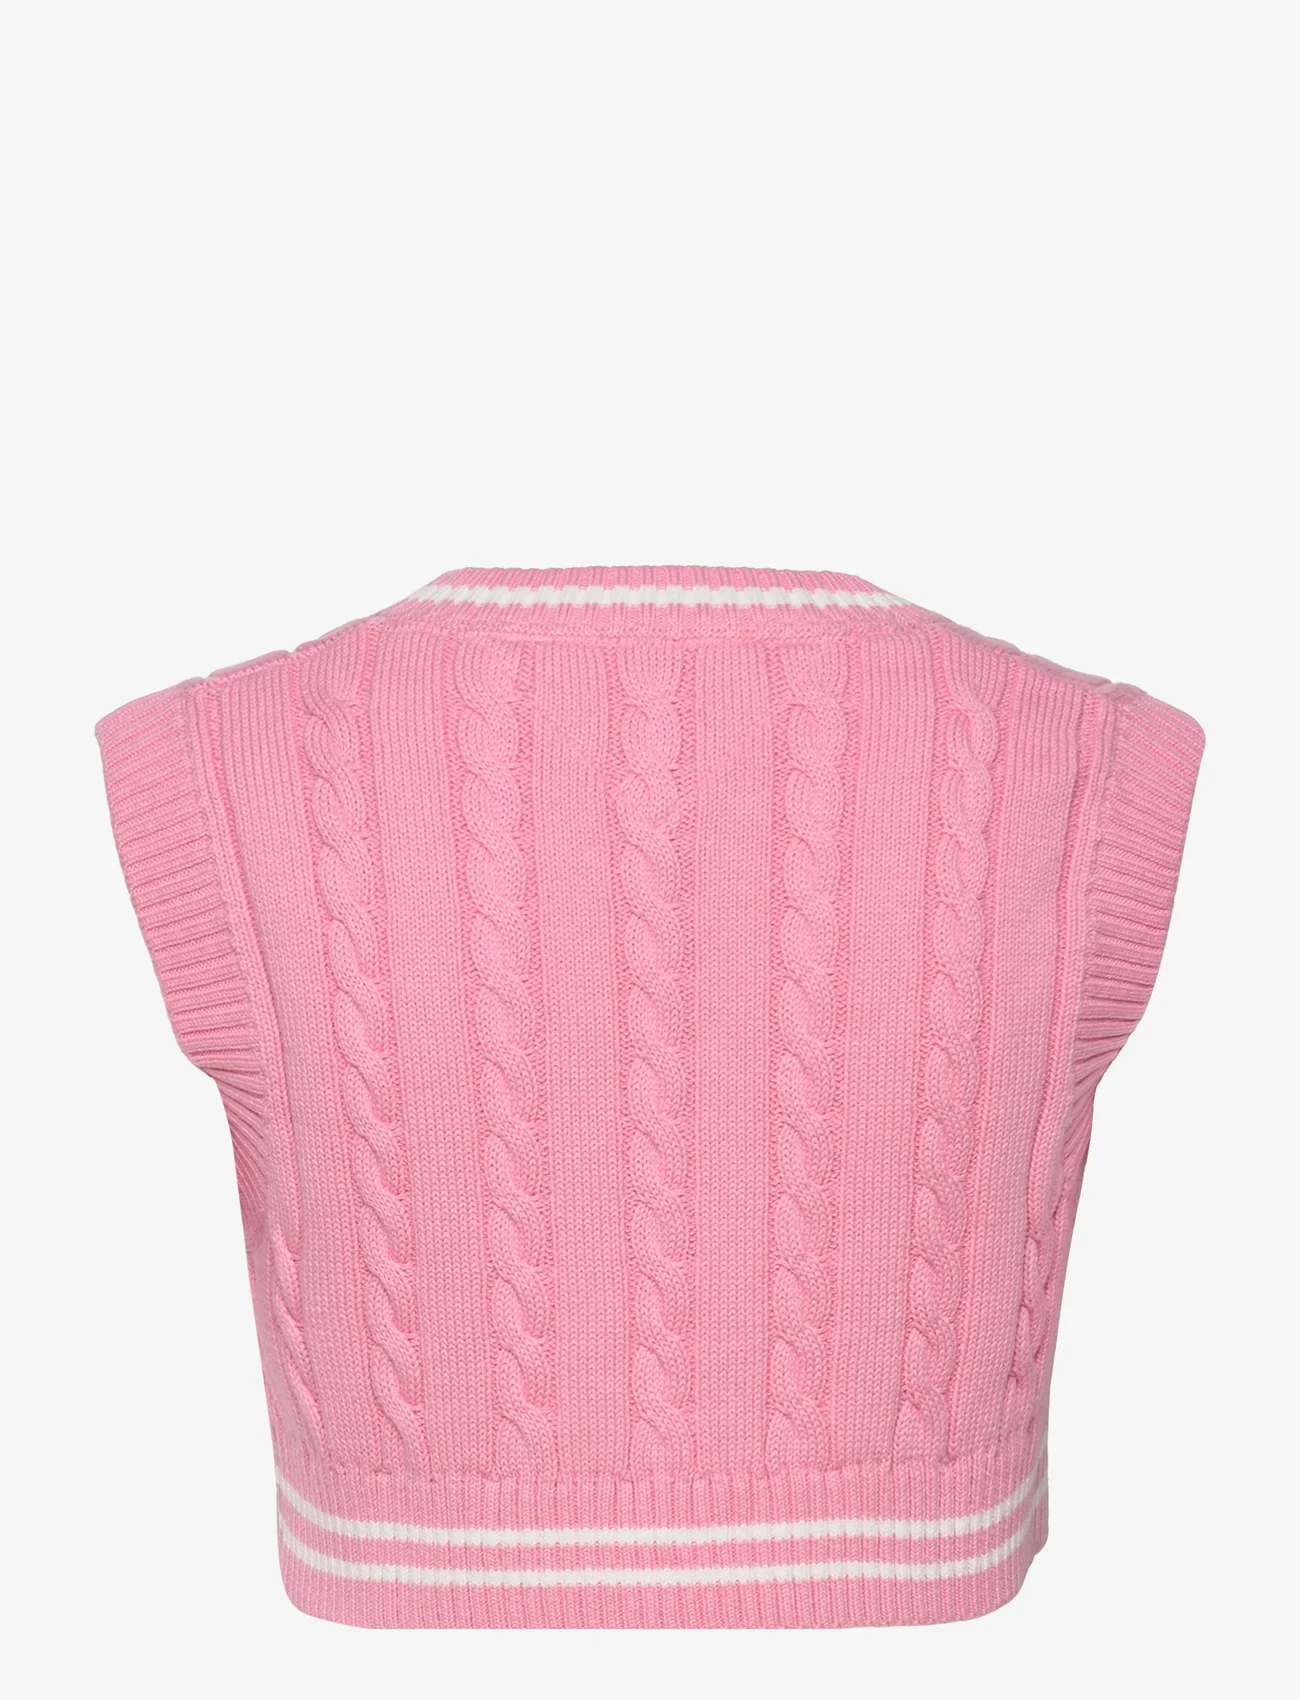 KIDS FASHION Coats Knitted Pink 164                  EU discount 92% Zara Duffel coat 